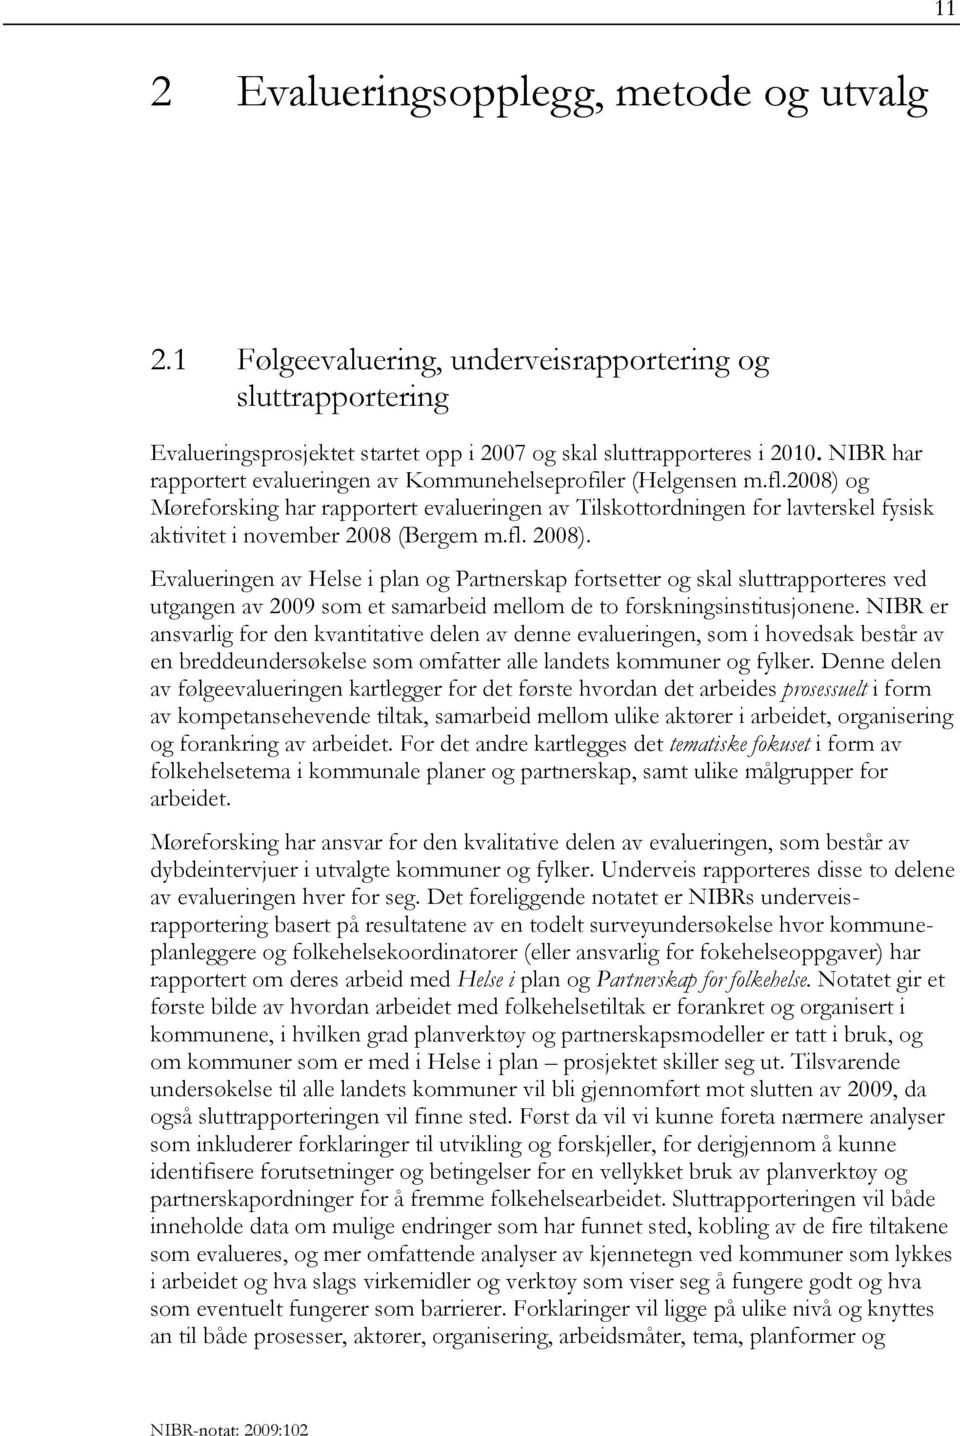 2008) og Møreforsking har rapportert evalueringen av Tilskottordningen for lavterskel fysisk aktivitet i november 2008 (Bergem m.fl. 2008).